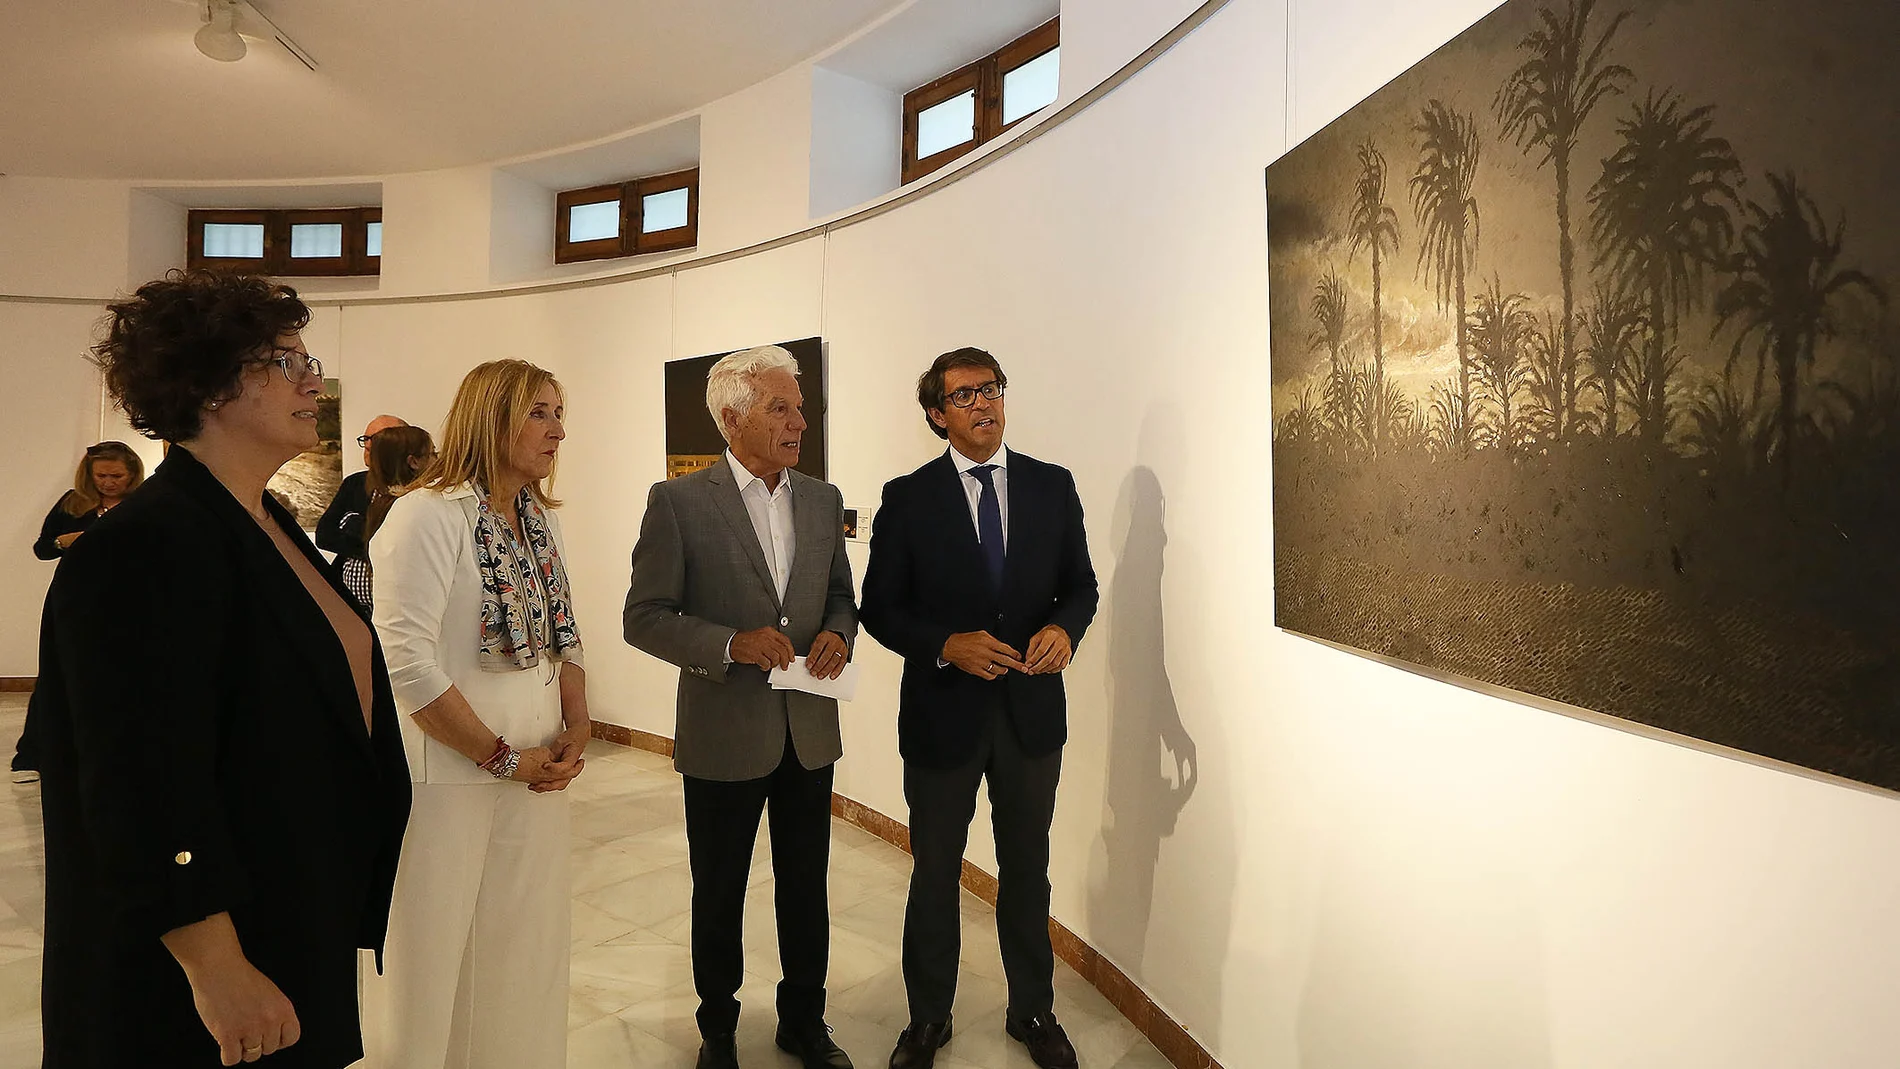 La exposición "Tiempo sin orillas" se puede visitar en la Diputación de Alicante hasta el 22 de julio